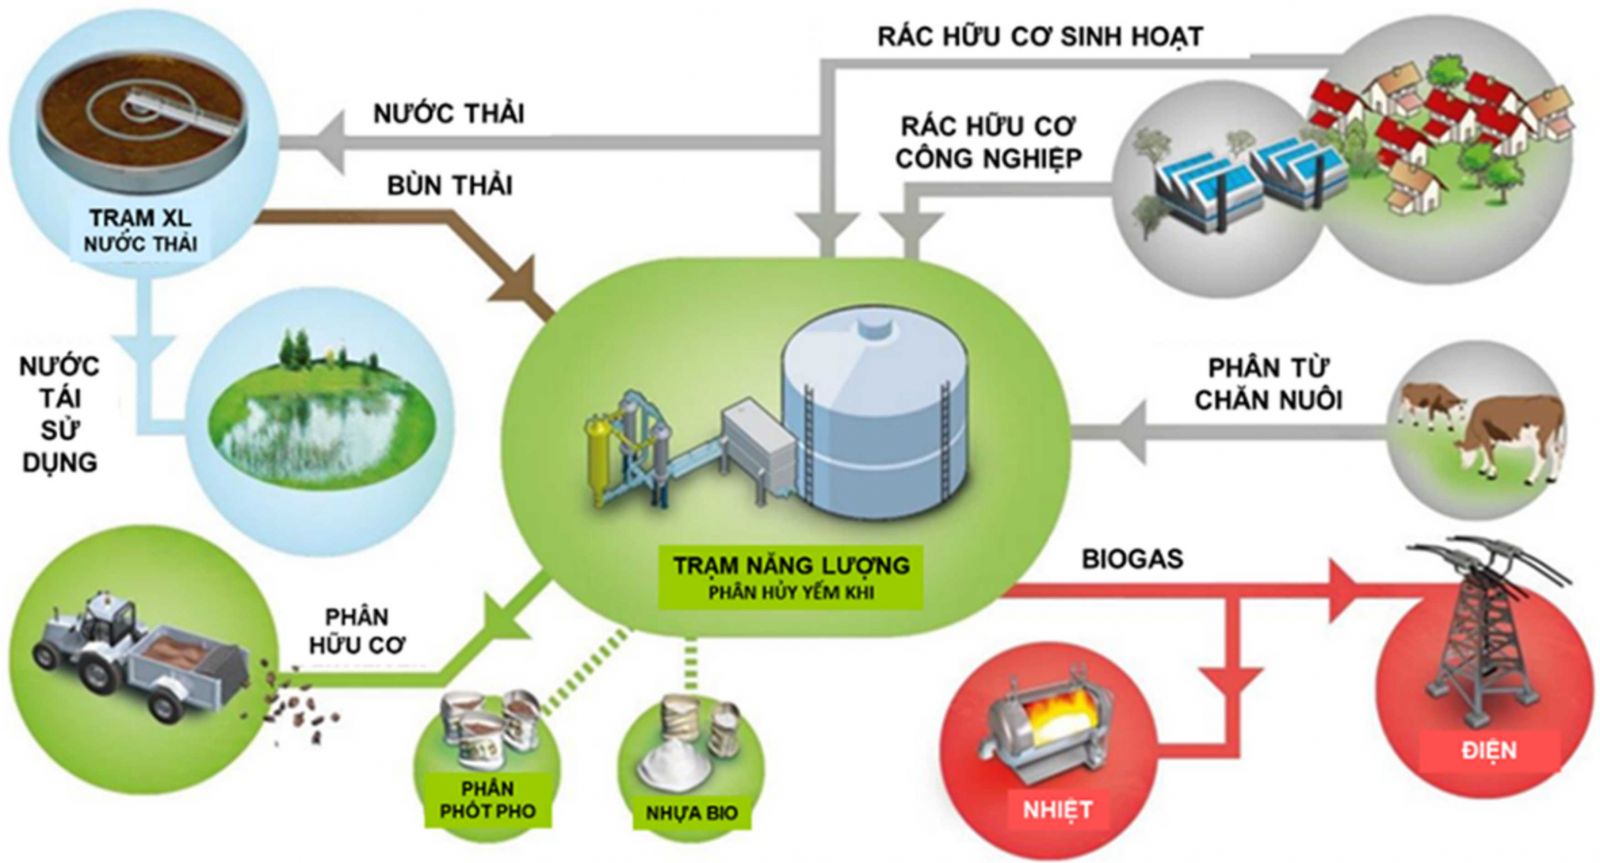 Hạ tầng kỹ thuật trong quy hoạch thành phố thông minh ở Việt Nam